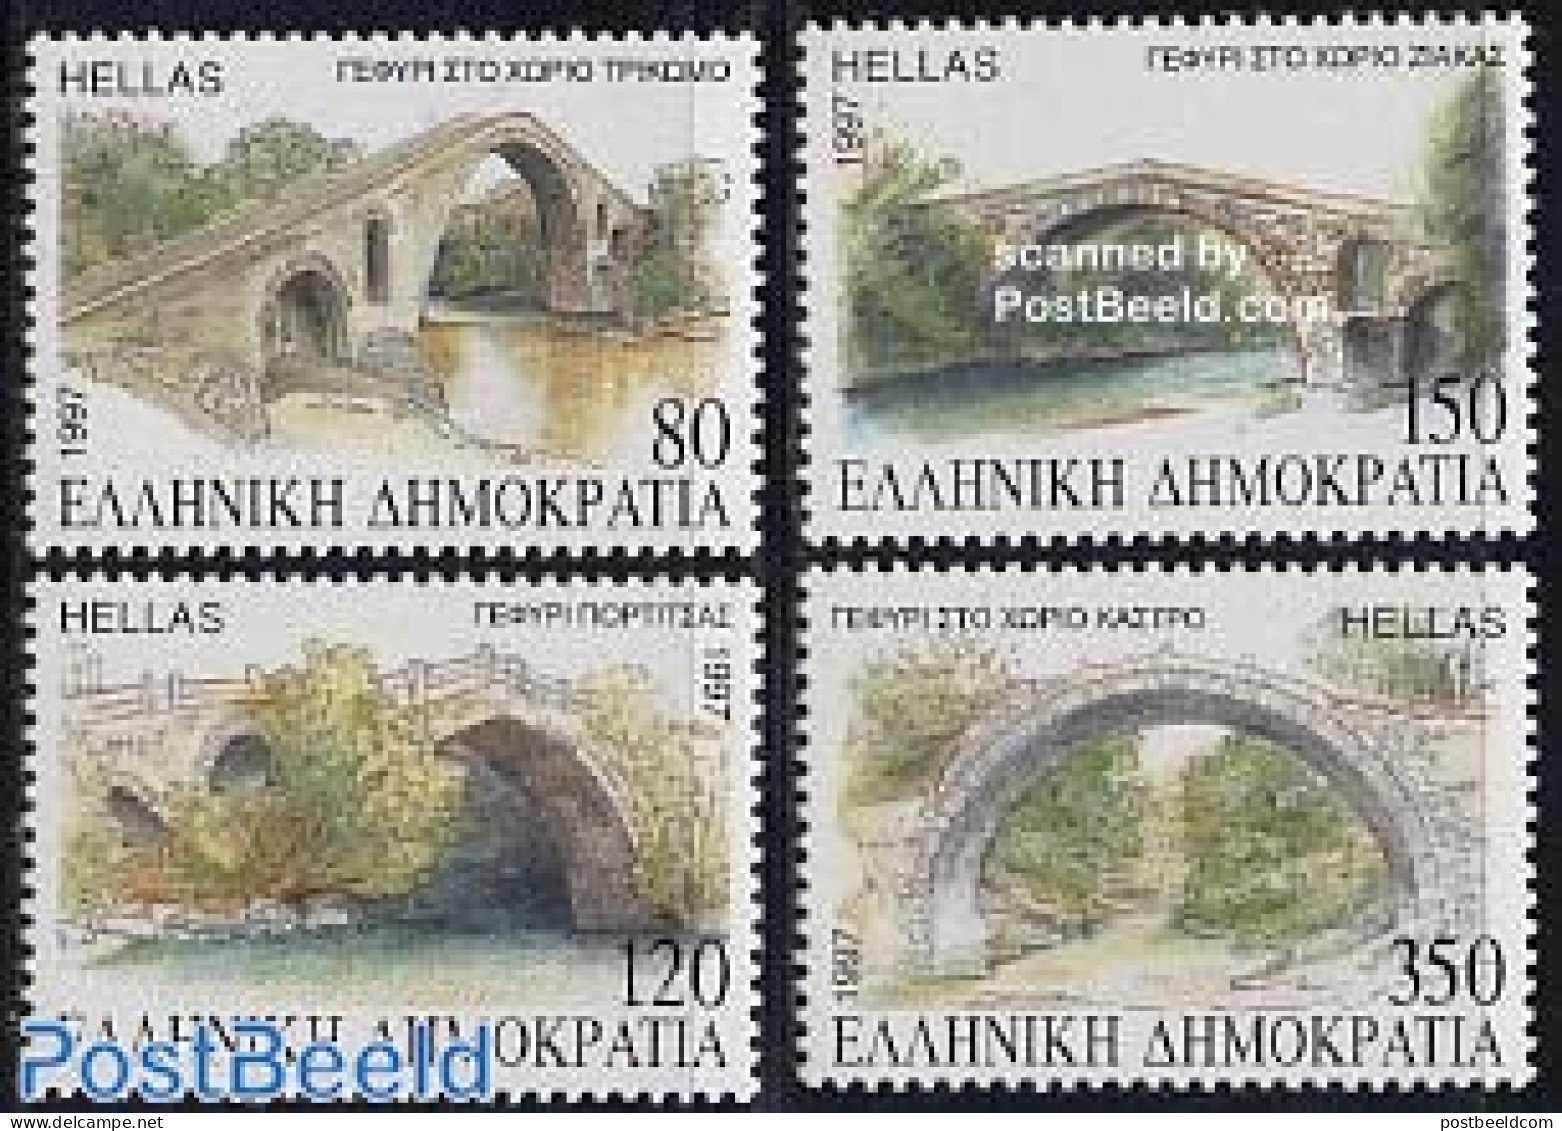 Greece 1997 Macedonian Bridges 4v, Mint NH, Art - Bridges And Tunnels - Ongebruikt